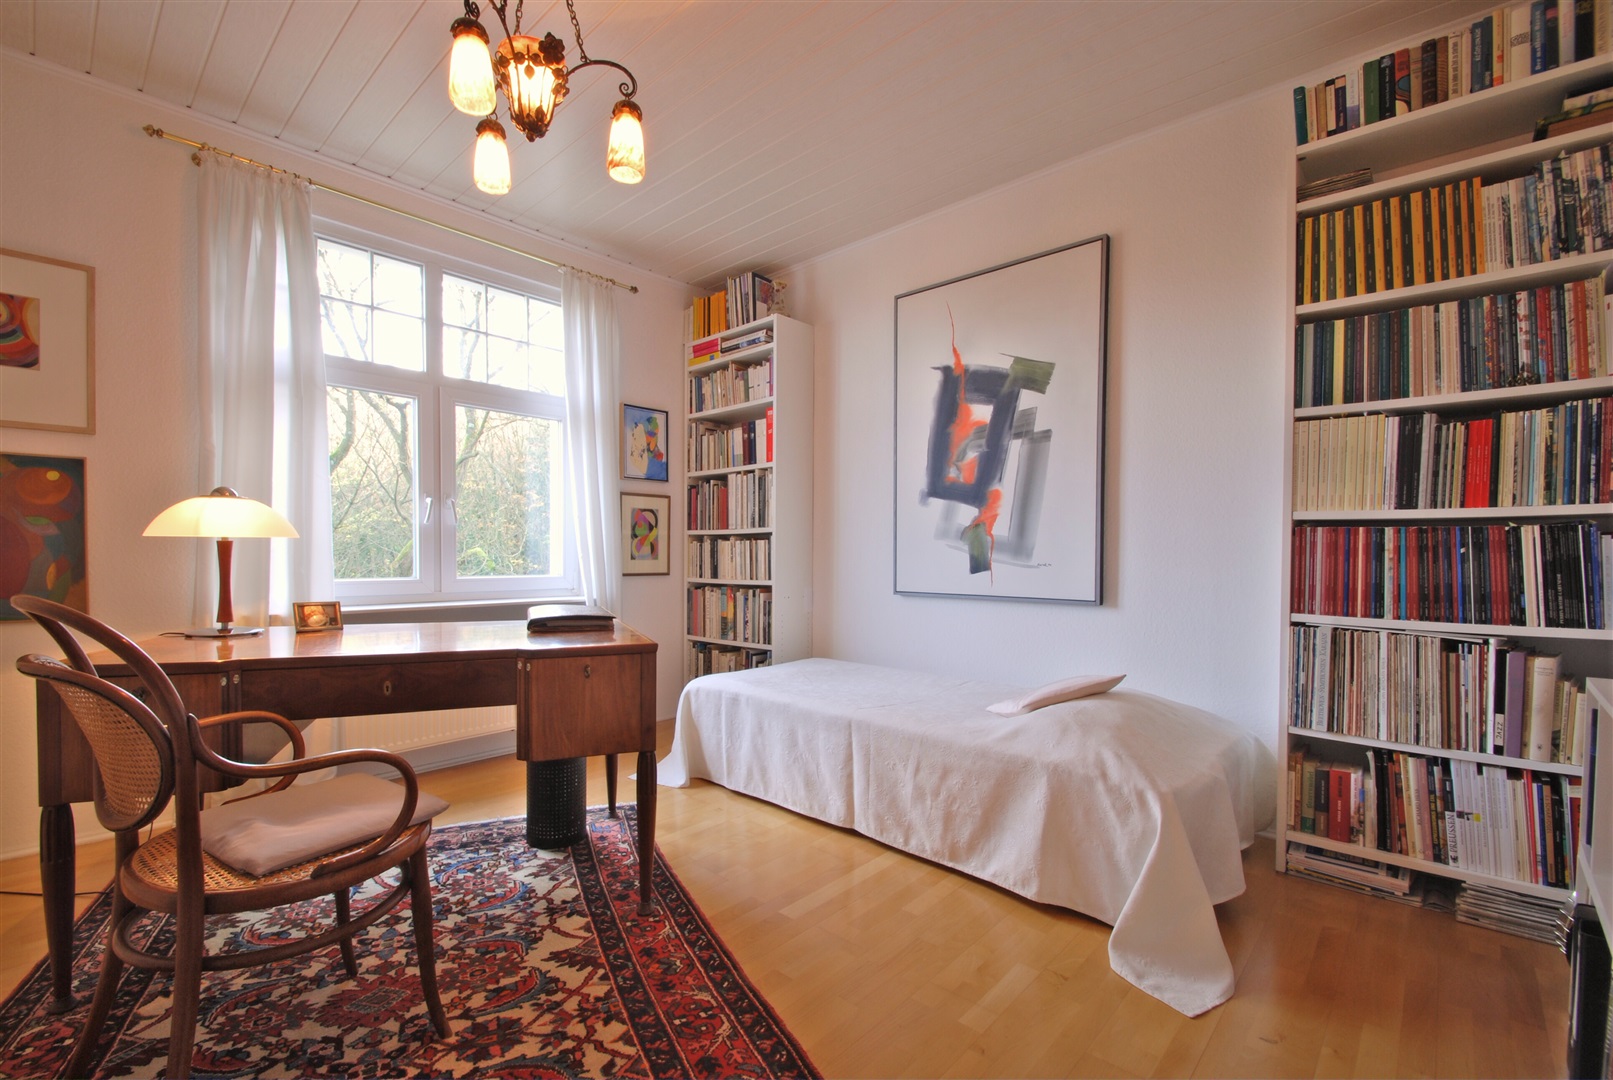 Zimmer 3. Der Raum wird aktuell als Büro und Bibliothek genutzt. - Oliver Reifferscheid - Immobilienmakler Darmstadt